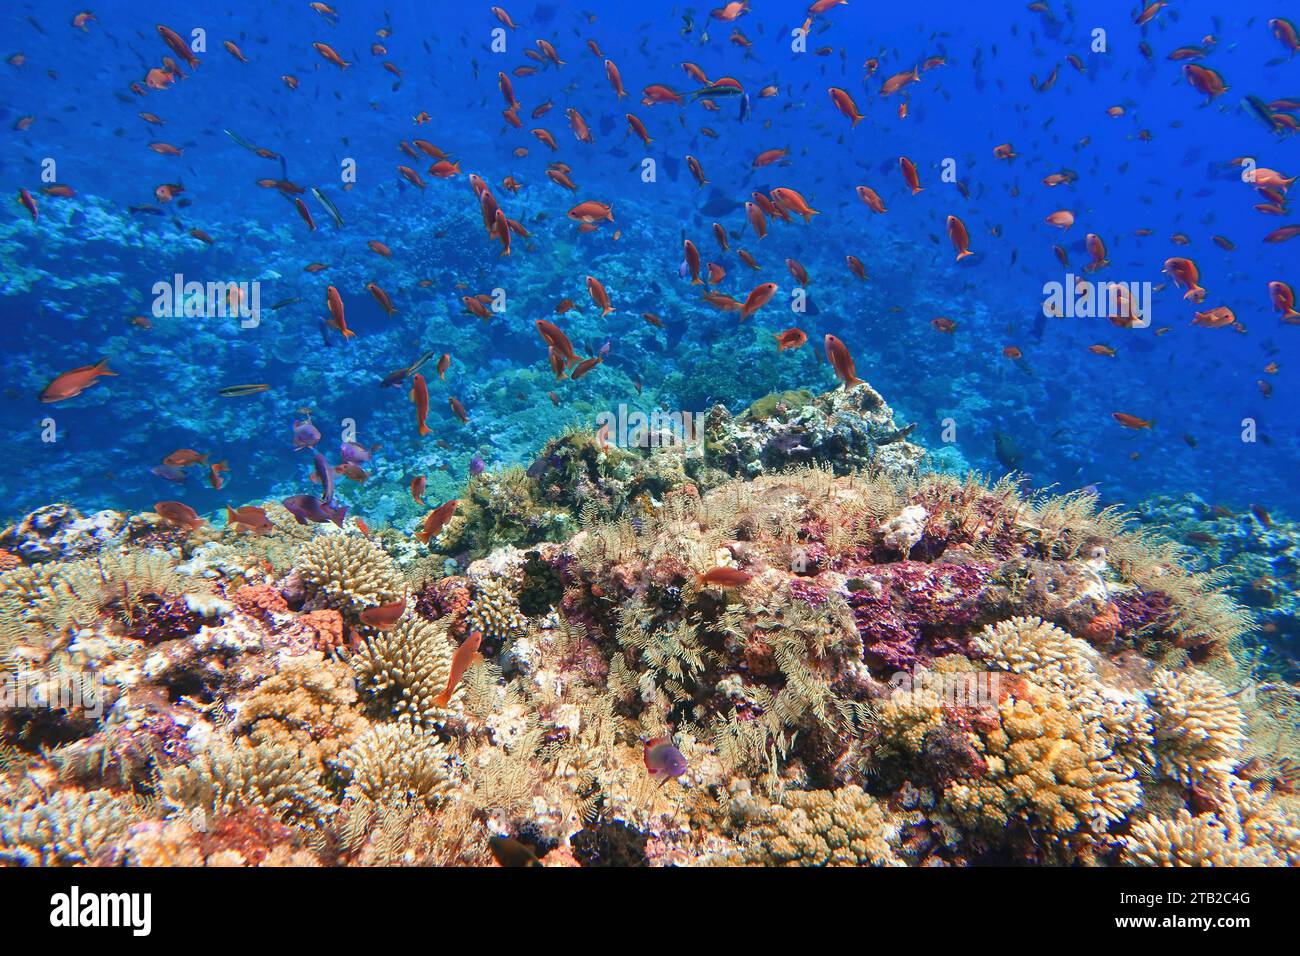 Indonesien Alor Island - Meeresleben Korallenriff mit tropischen Fischen Stockfoto